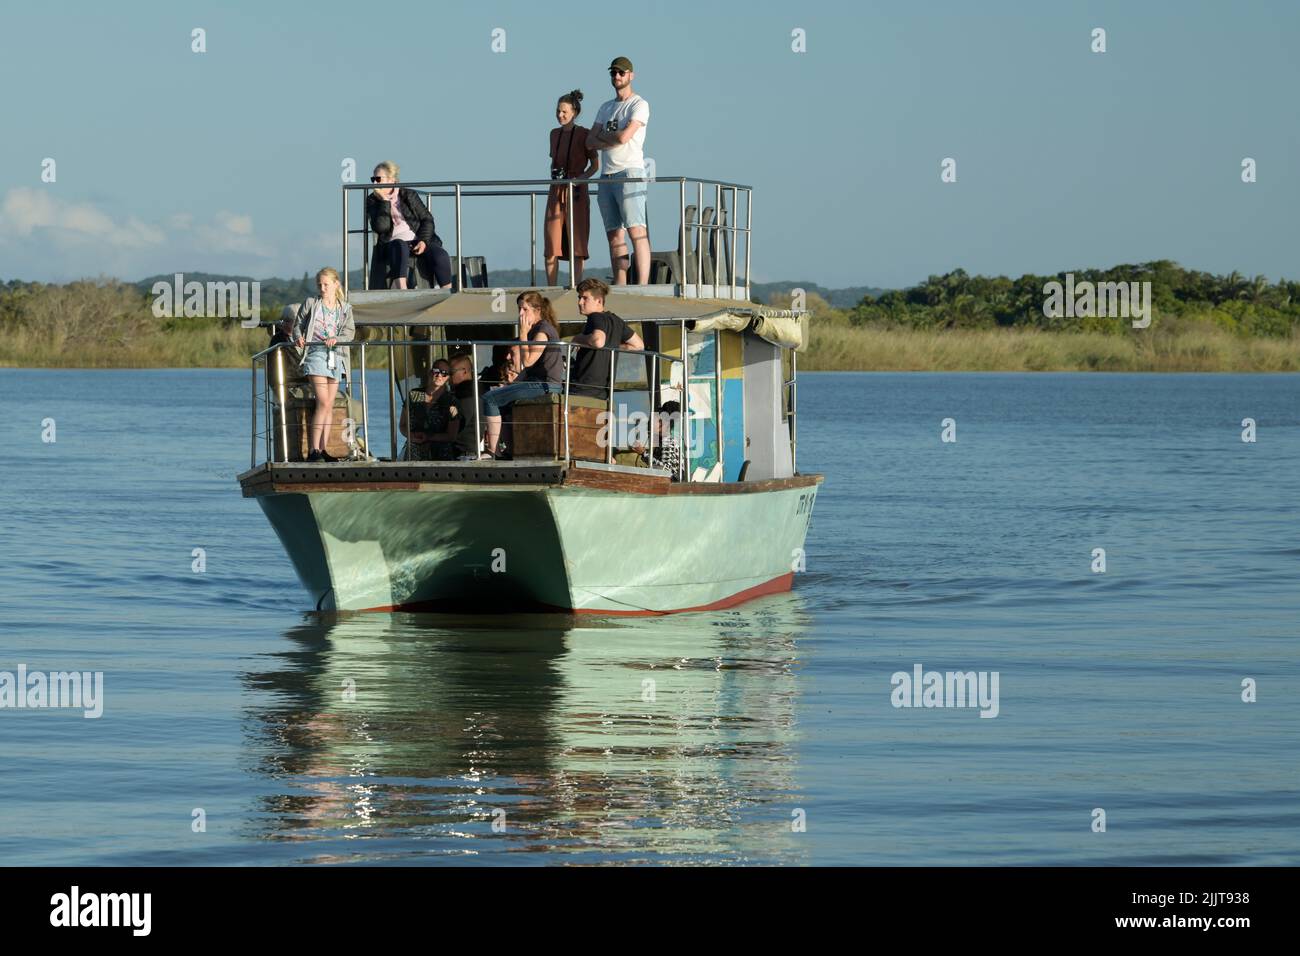 Persone in crociera safari in barca, avventura di viaggio nella natura, parco delle paludi di Isimangaliso, St Lucia, KwaZulu-Natal, Sudafrica, attività all'aperto di gruppo Foto Stock